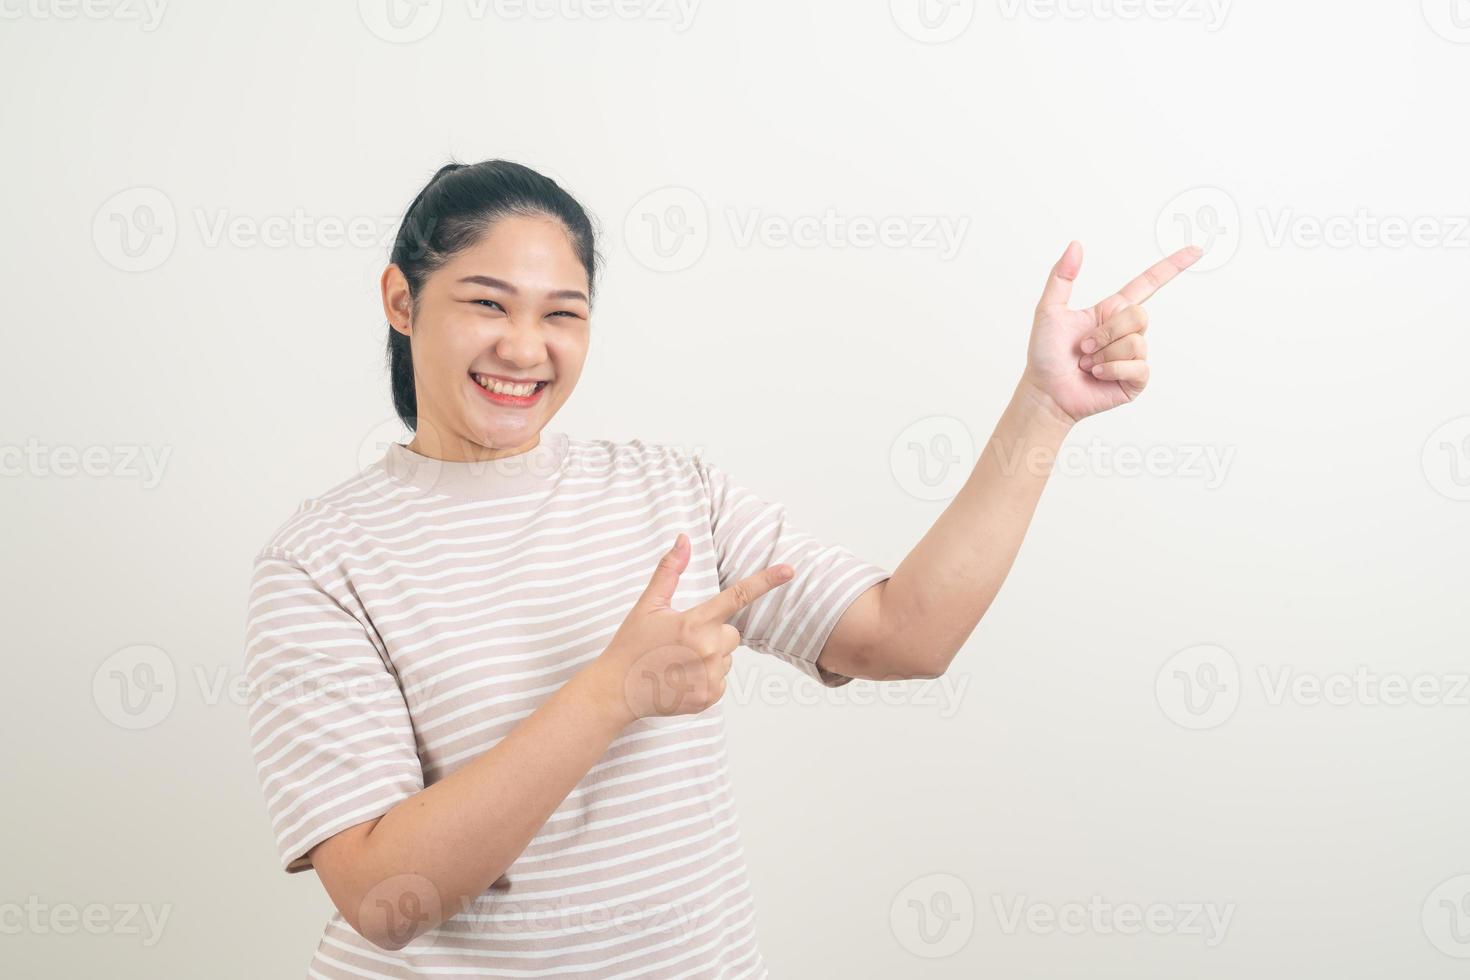 asiatisk kvinna med handen pekar på väggen foto